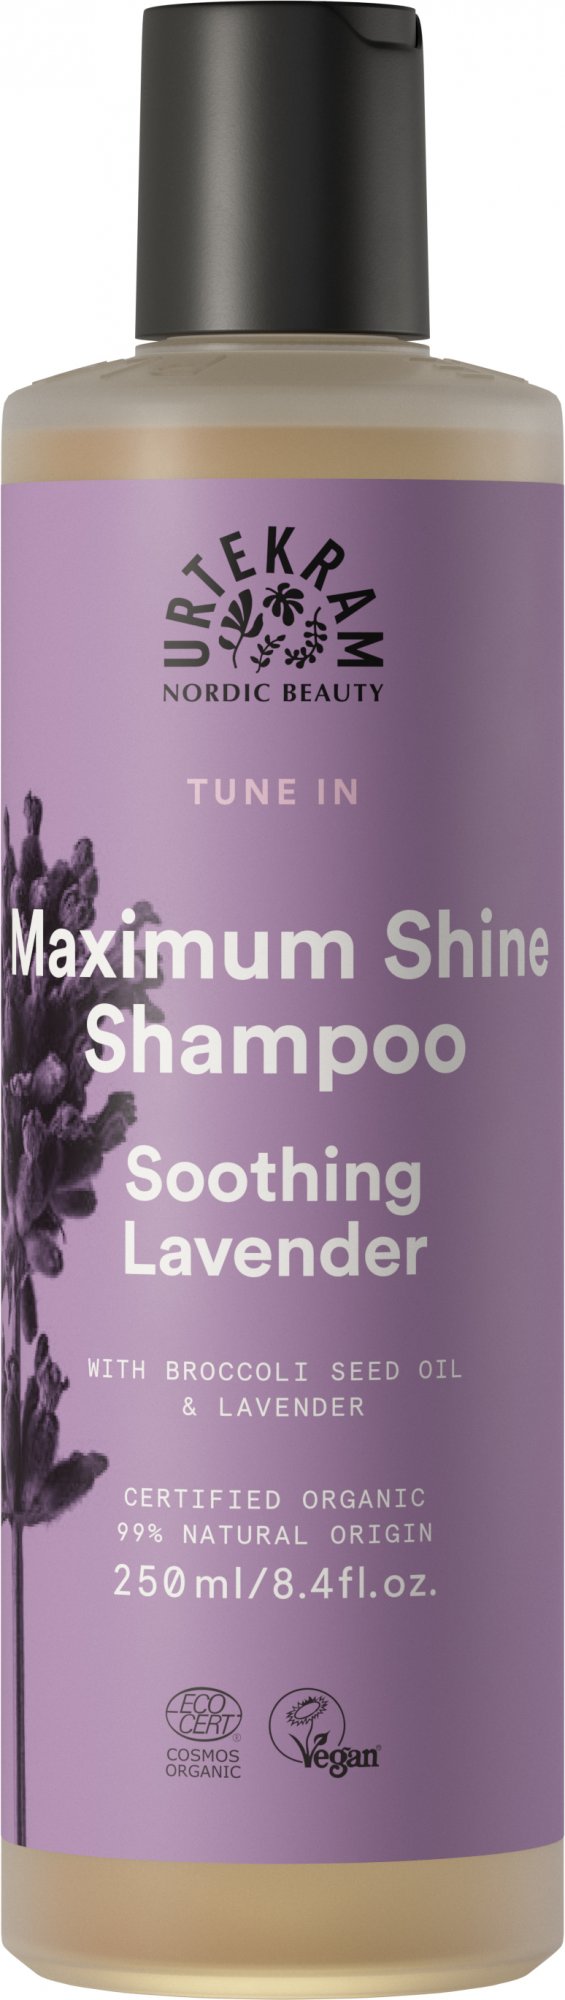 Urtekram Levandulový šampon pro uhlazení a lesk vlasů BIO 250 ml